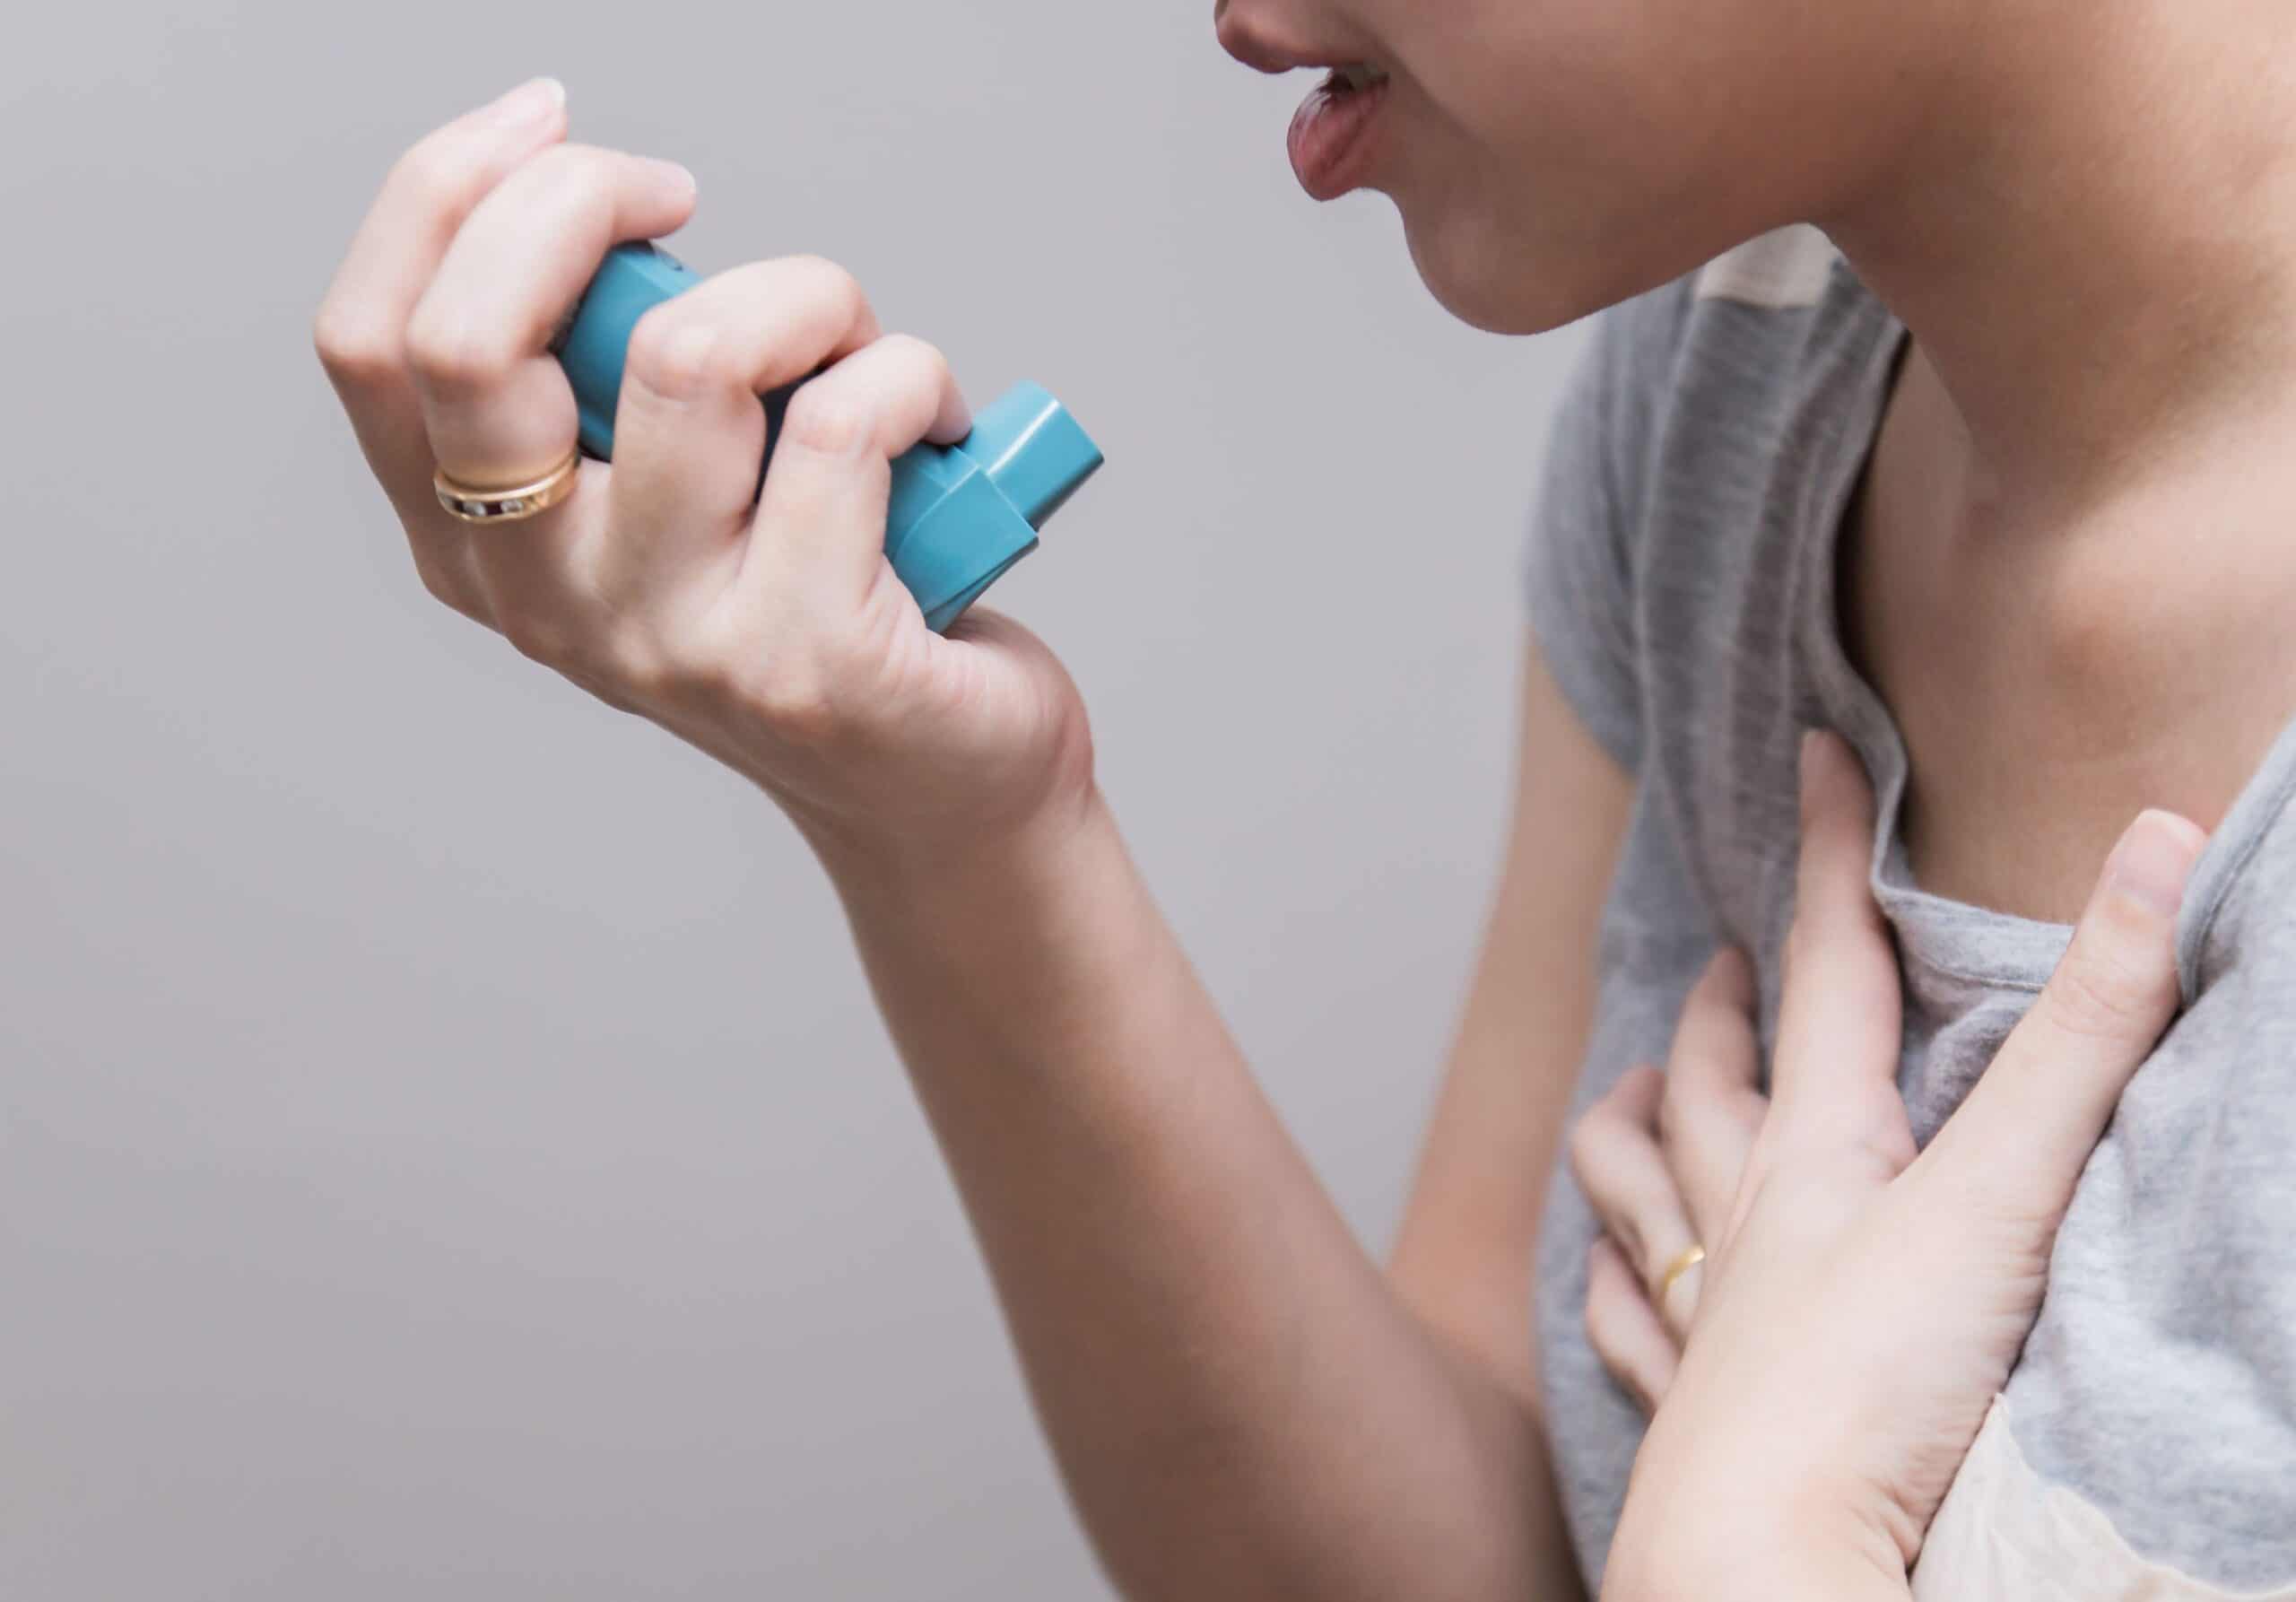 Myths about asthma